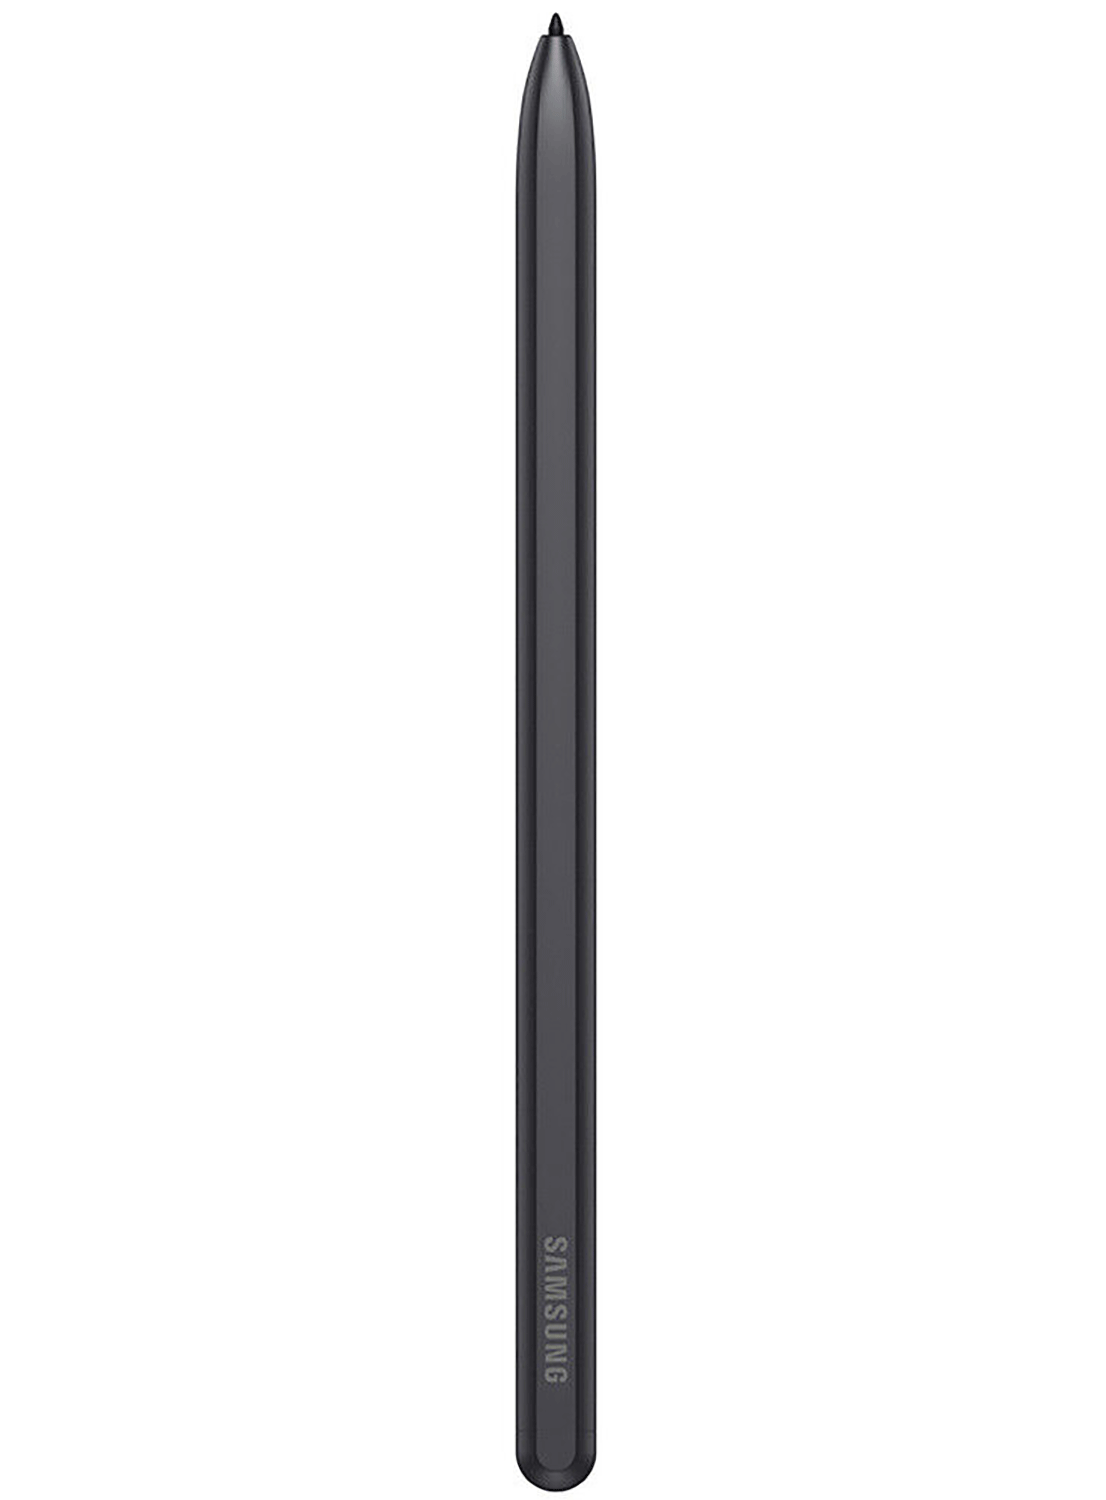 Original Samsung Galaxy Tab S7 FE S Pen EJ-PT730 Schwarz GH96-14339A